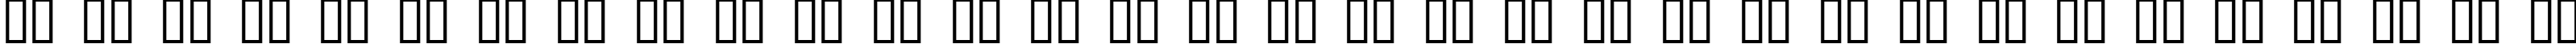 Пример написания русского алфавита шрифтом Rothenburg Decorative